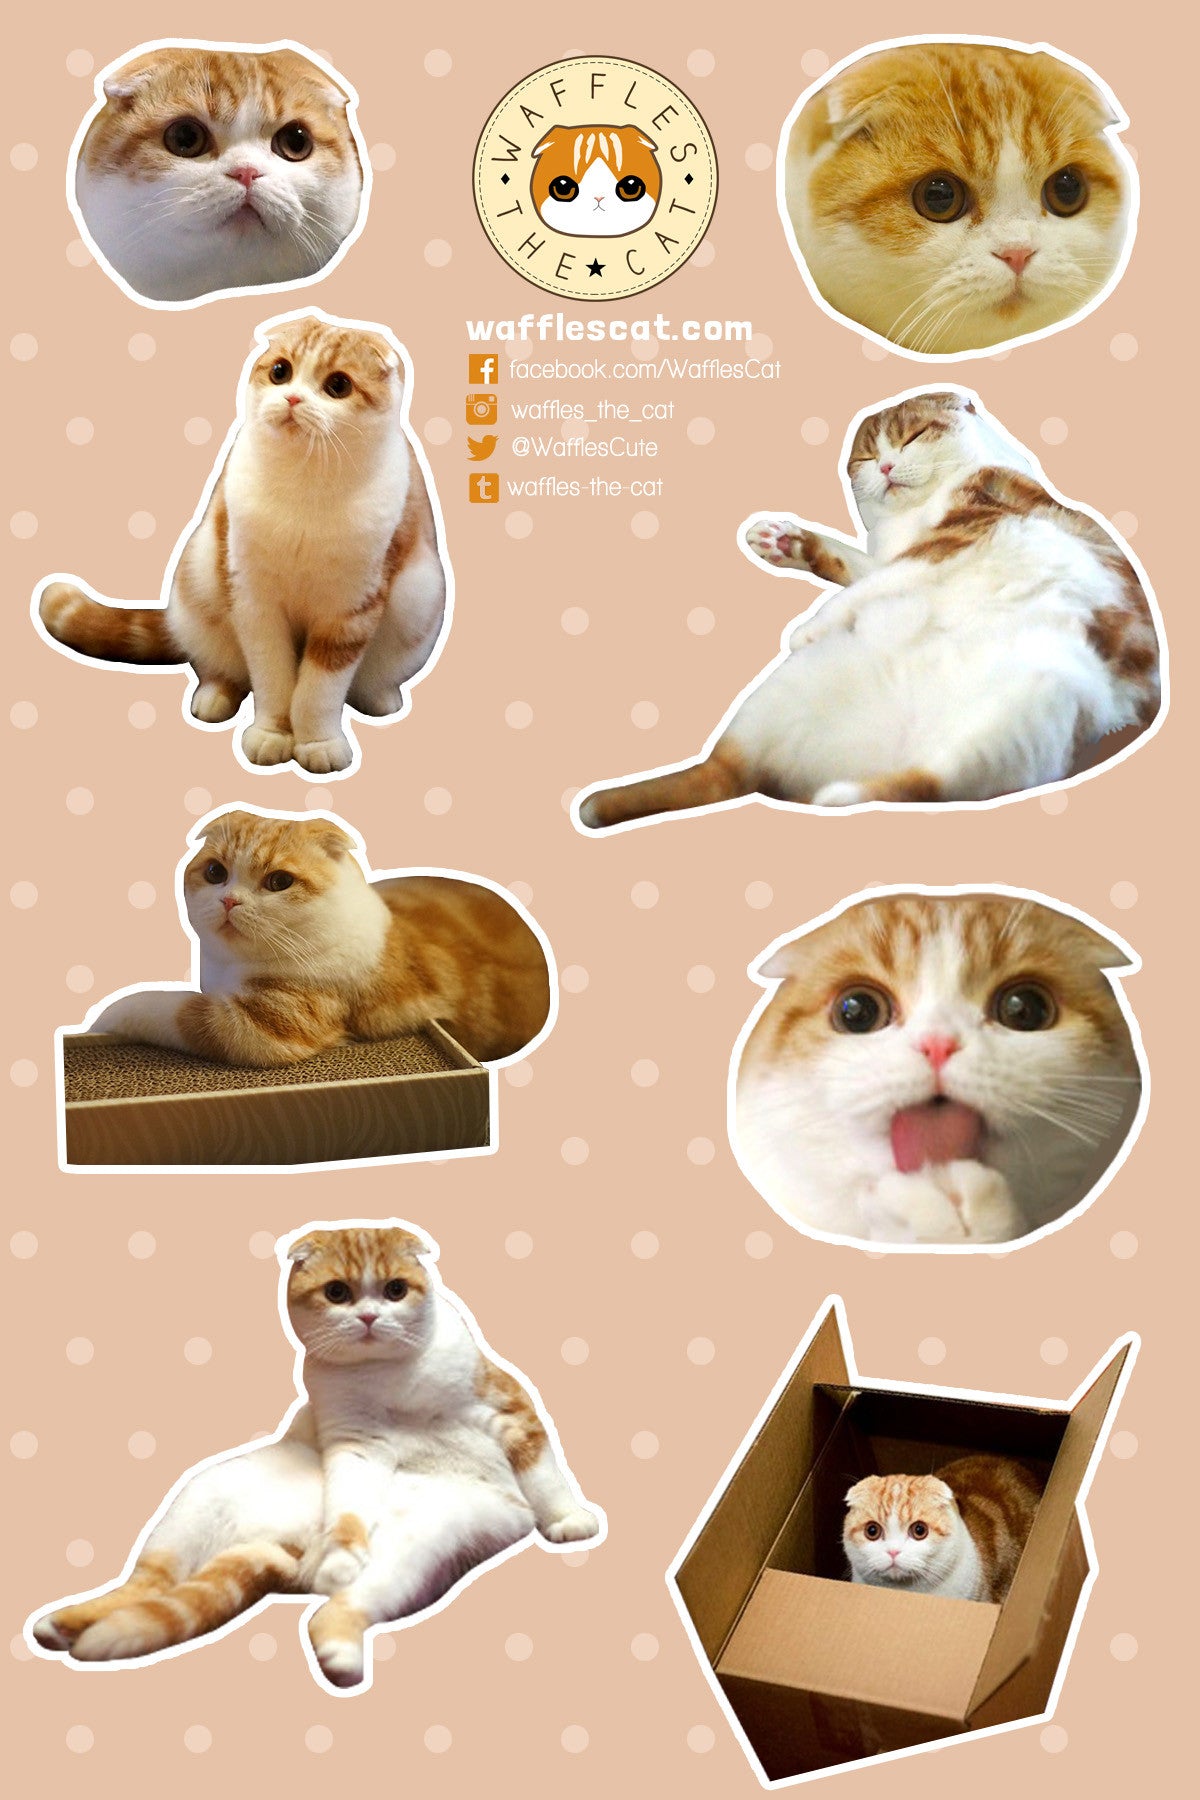 Cute Cats Sticker Sheet